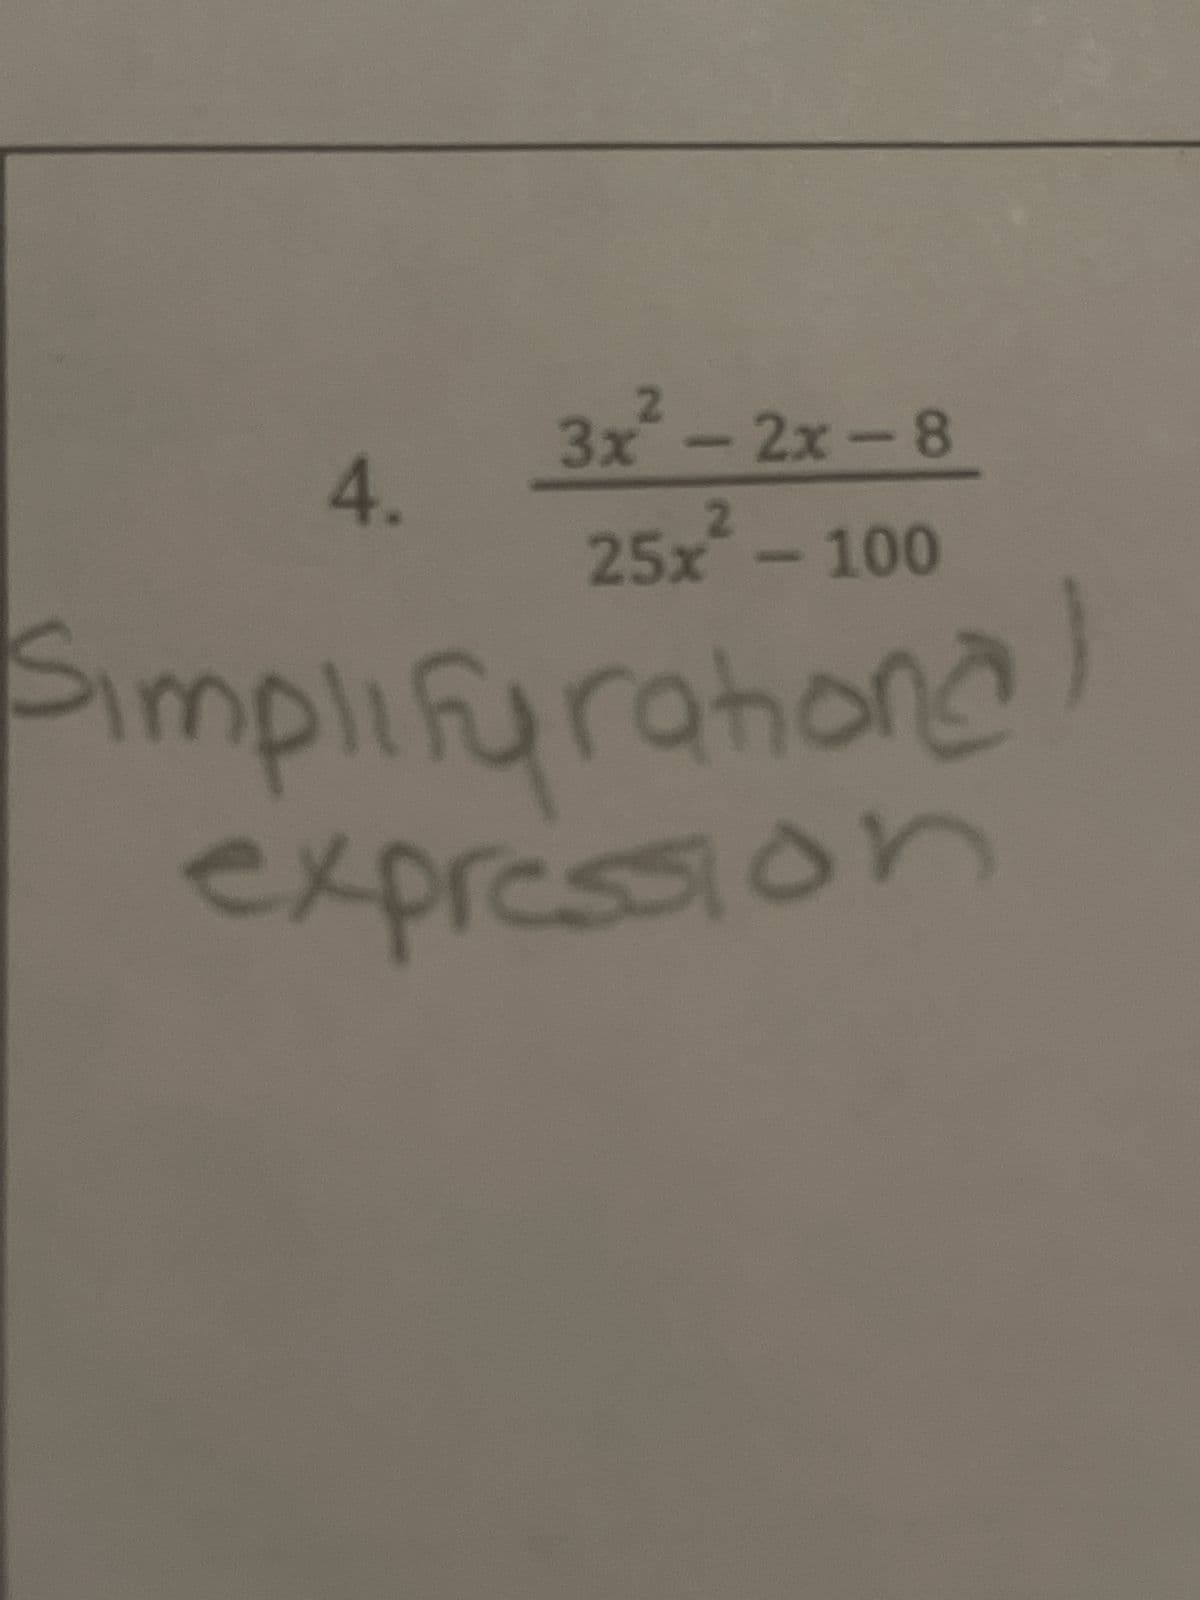 3x² - 2x-8
25x² - 100
Simplifurahional
expression
4.